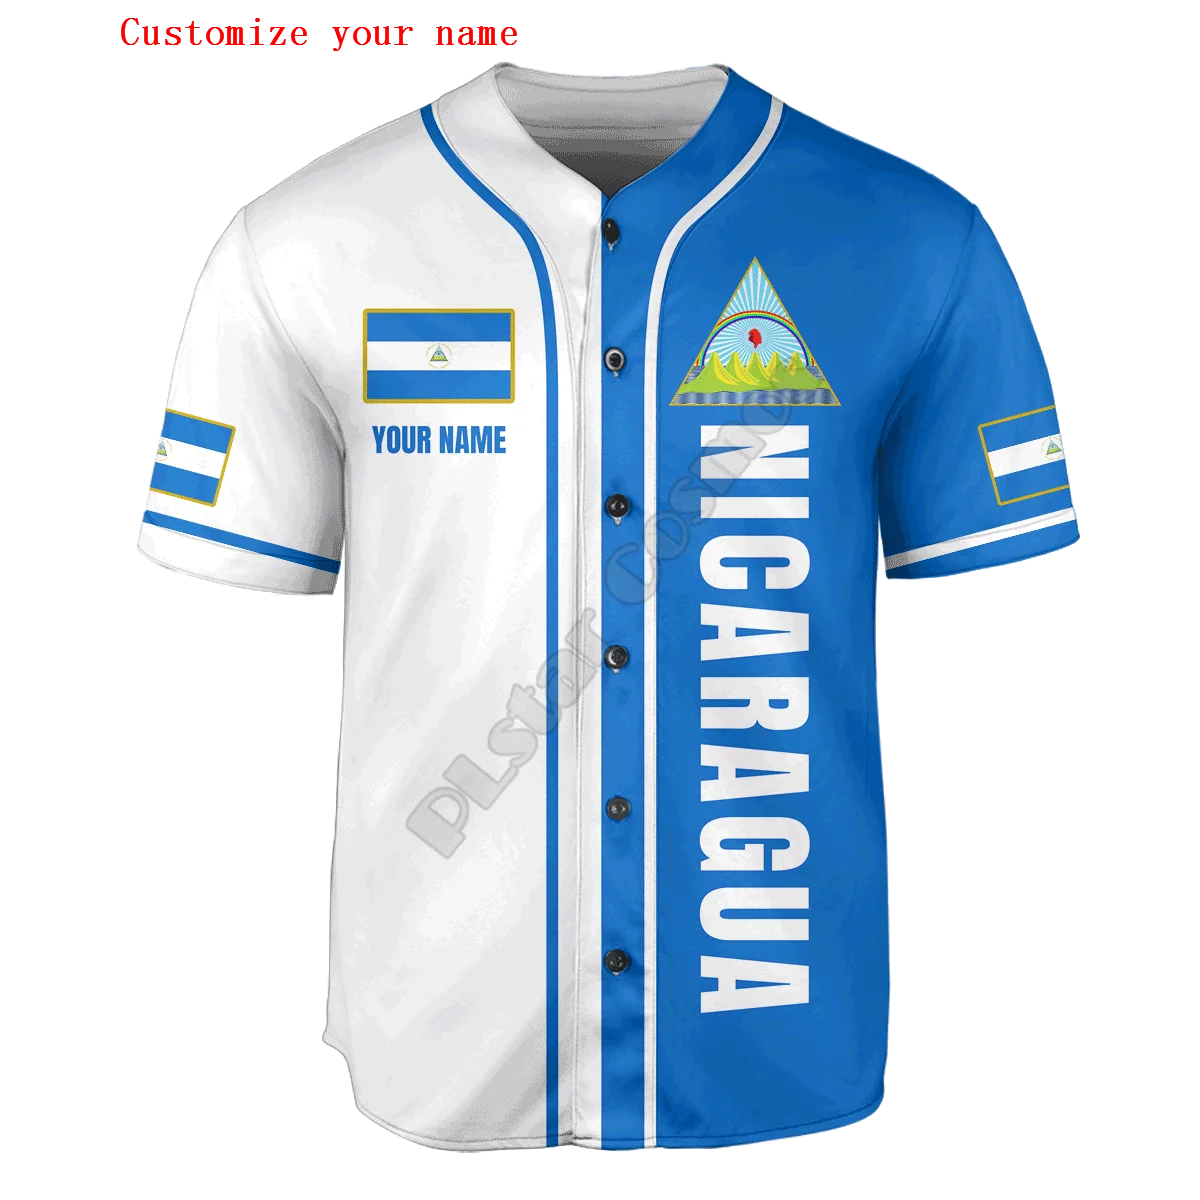 Honduras Half & Half Customize Your Name Baseball Jersey Shirt Baseball Shirt 3D Printed Men's Shirt Casual Shirts hip hop Tops